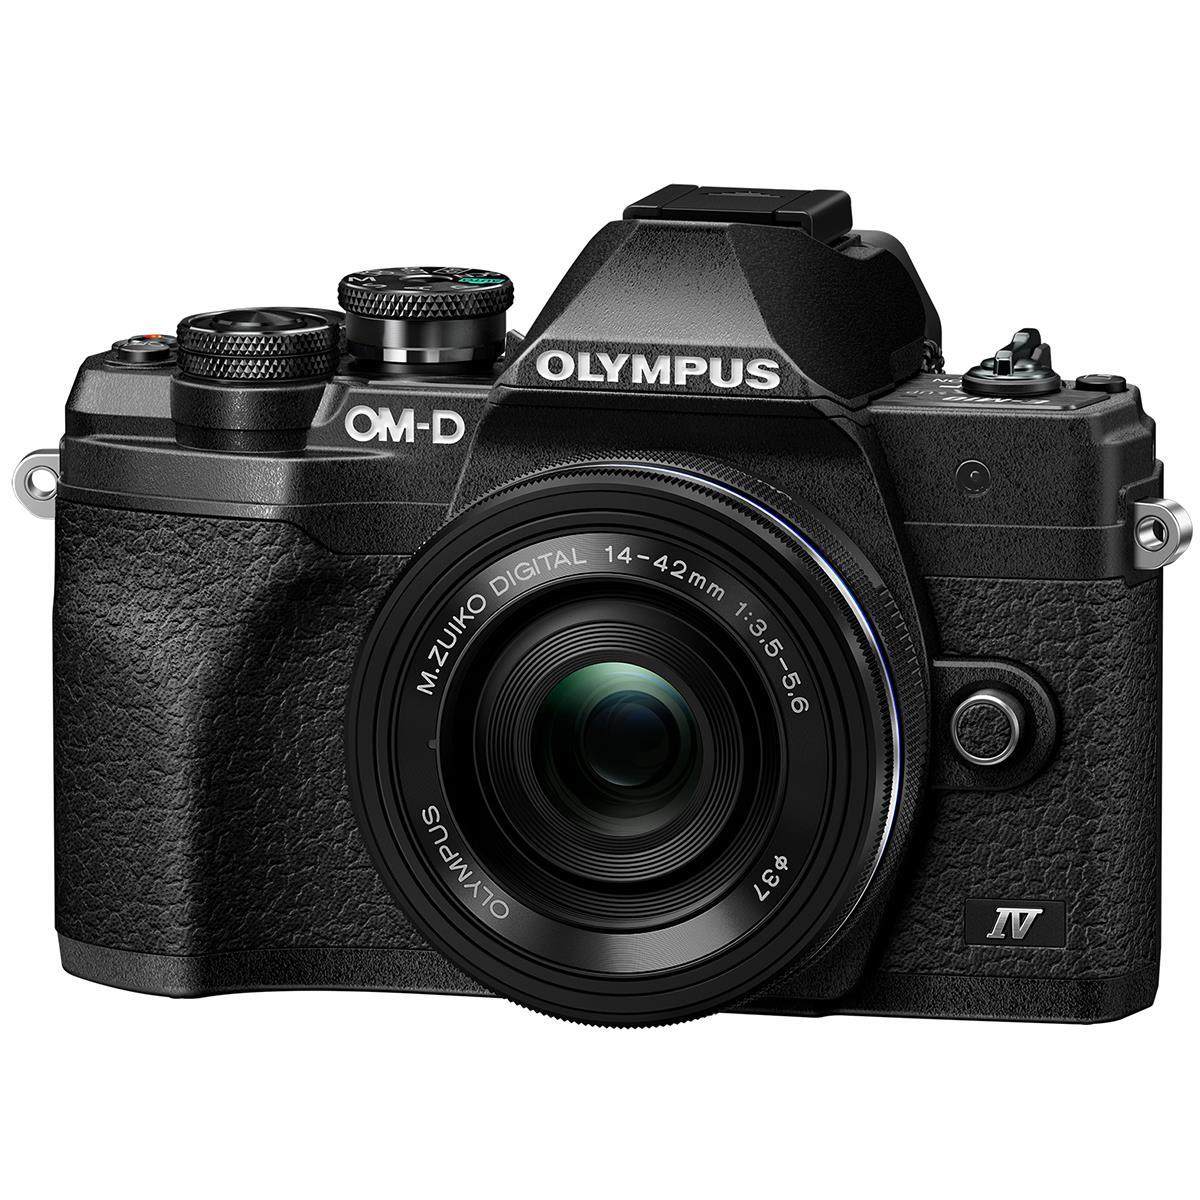 Image of Olympus OM-D E-M10 Mark IV with ED 14-42mm F3.5-5.6 EZ Lens